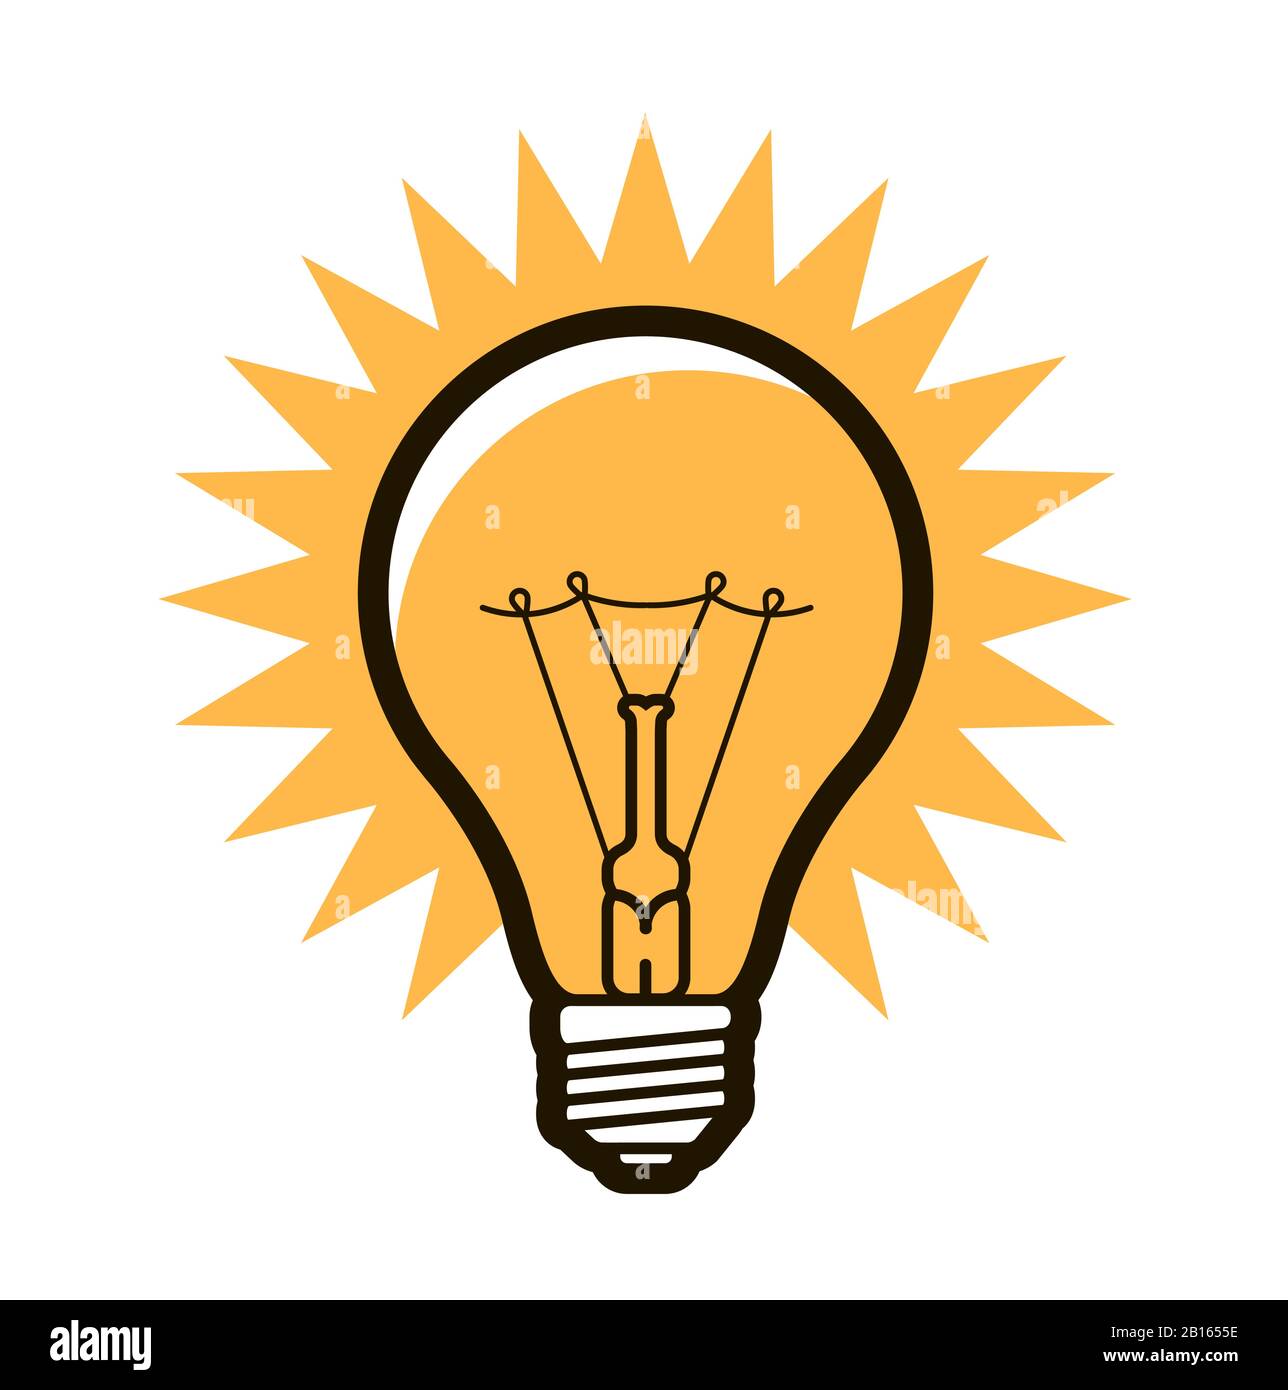 Illustration De La Lampe 3d Icône De L'ampoule Jaune 3d Ampoule Avec Des  Rayons Brillent Symbole De L'énergie Et De L'idée Illustration De Rendu 3d